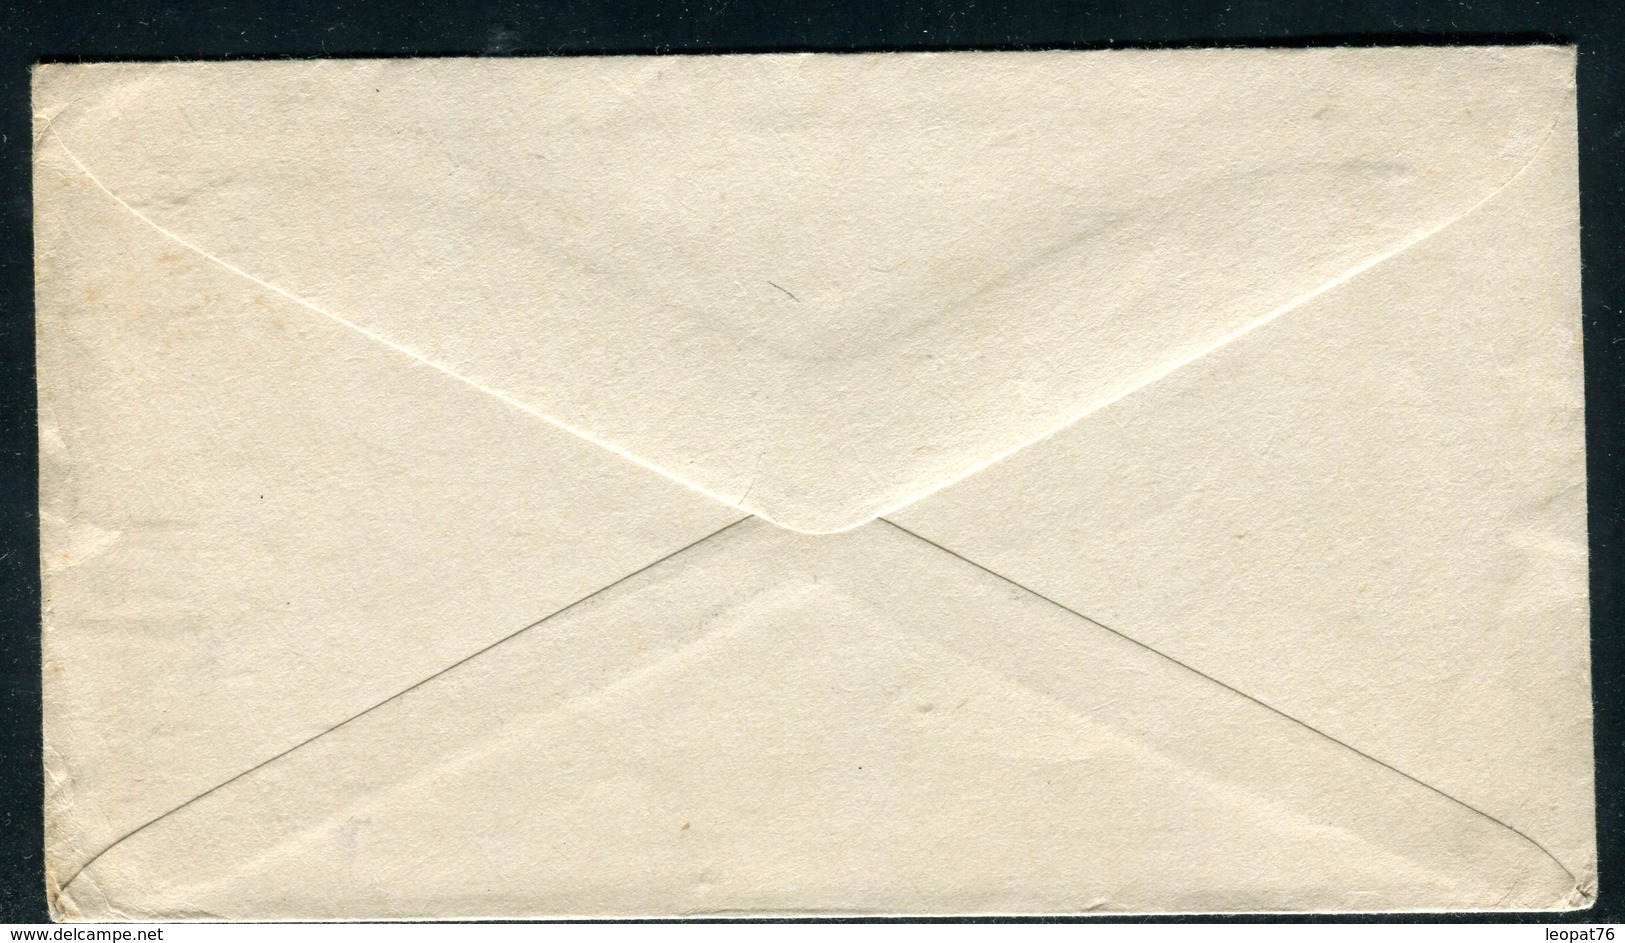 Etats Unis - Entier Postal De Urbana Pour Paris En 1915 - 1901-20